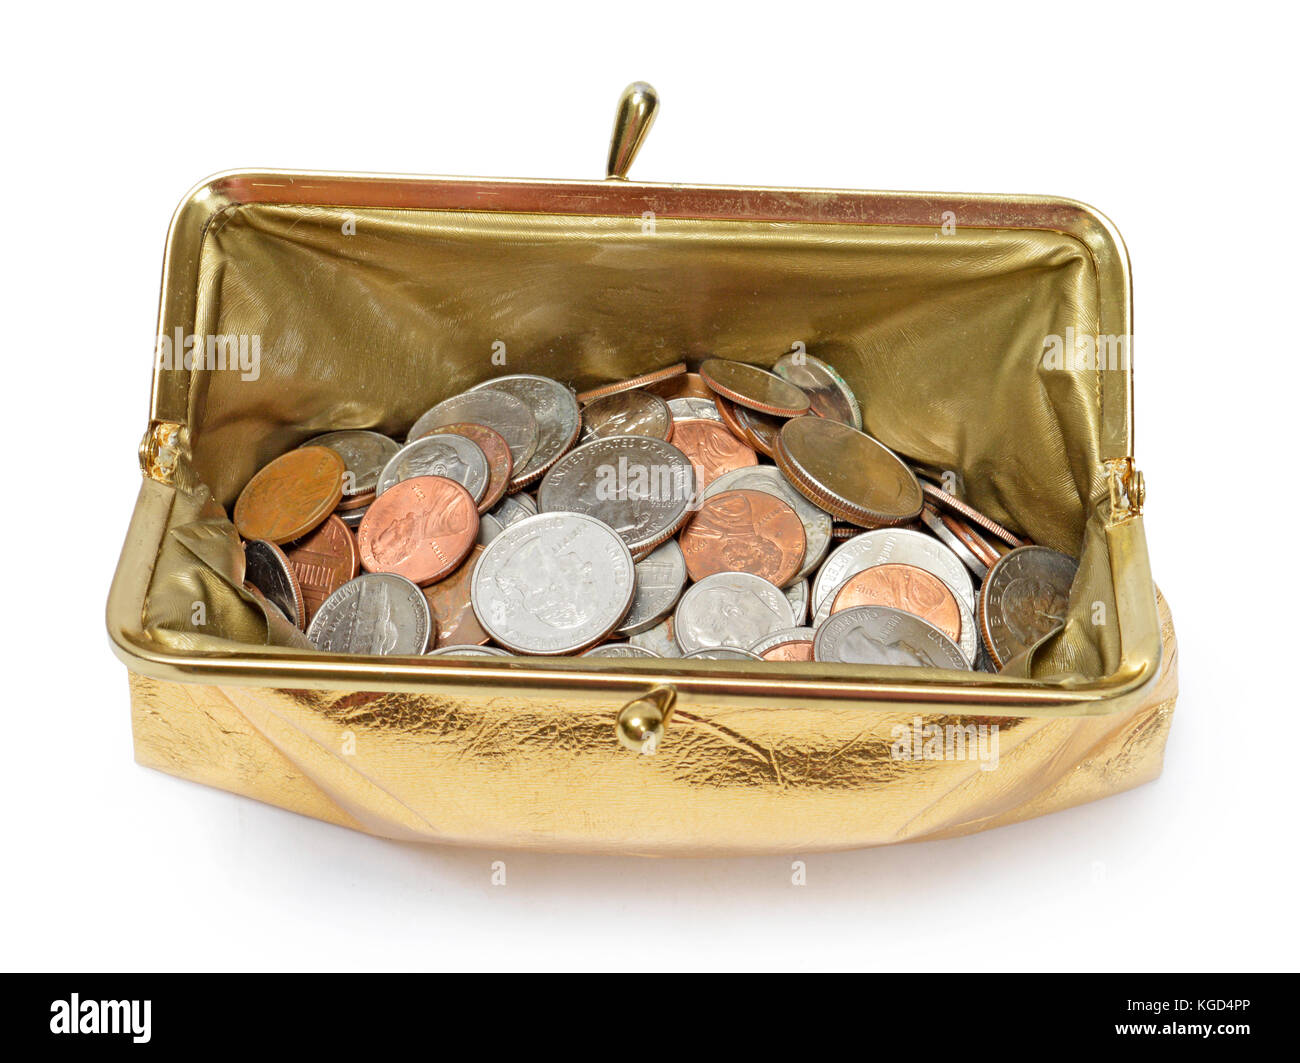 Tourné à l'horizontale vers le bas dans un porte-monnaie métallique d'or rempli de pièces de monnaie sur un fond blanc. Banque D'Images